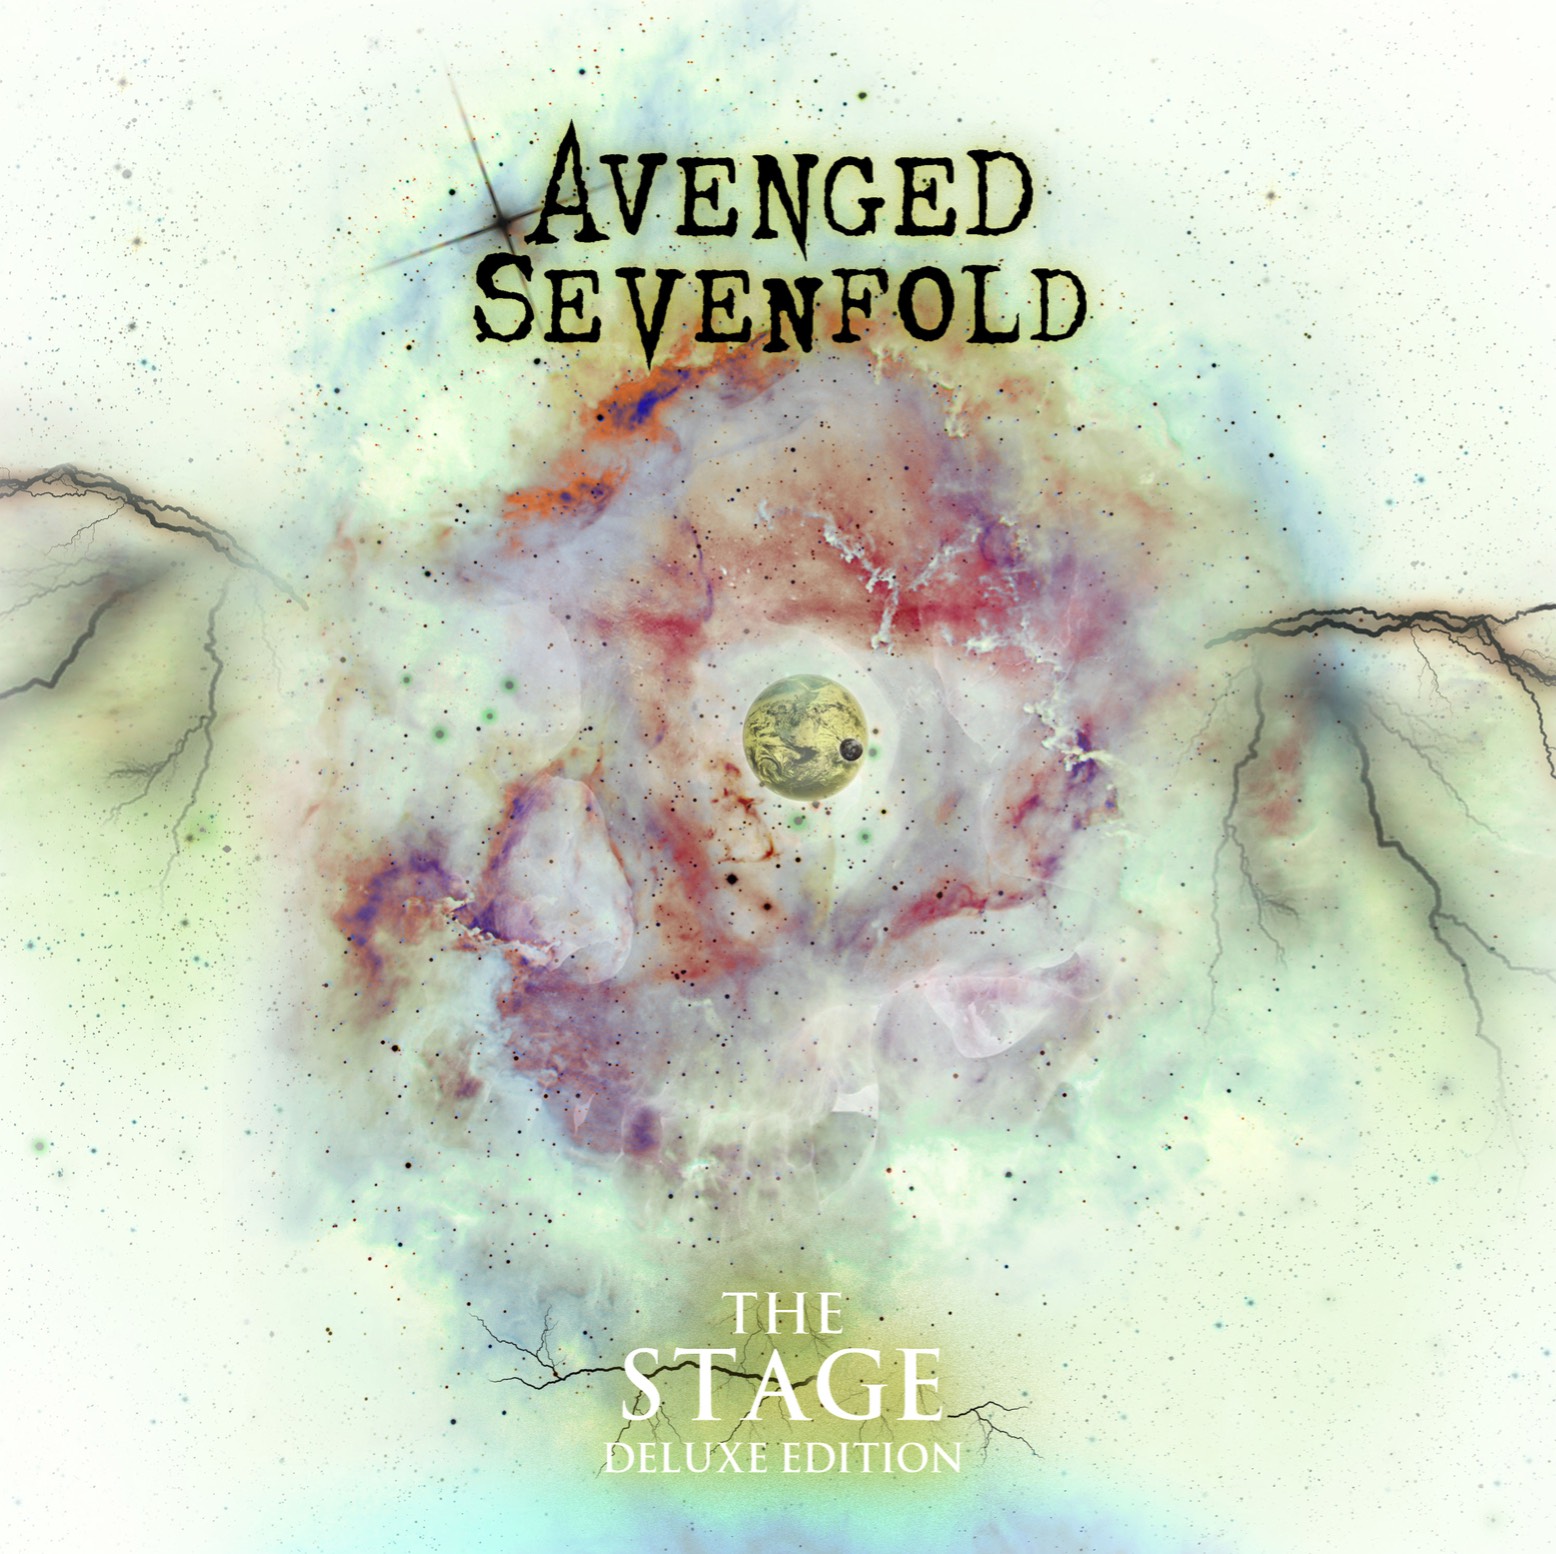 Avenged Sevenfold veröffentlichen Akustikalbum / The Stage Deluxe Edition erscheint am 22.12.